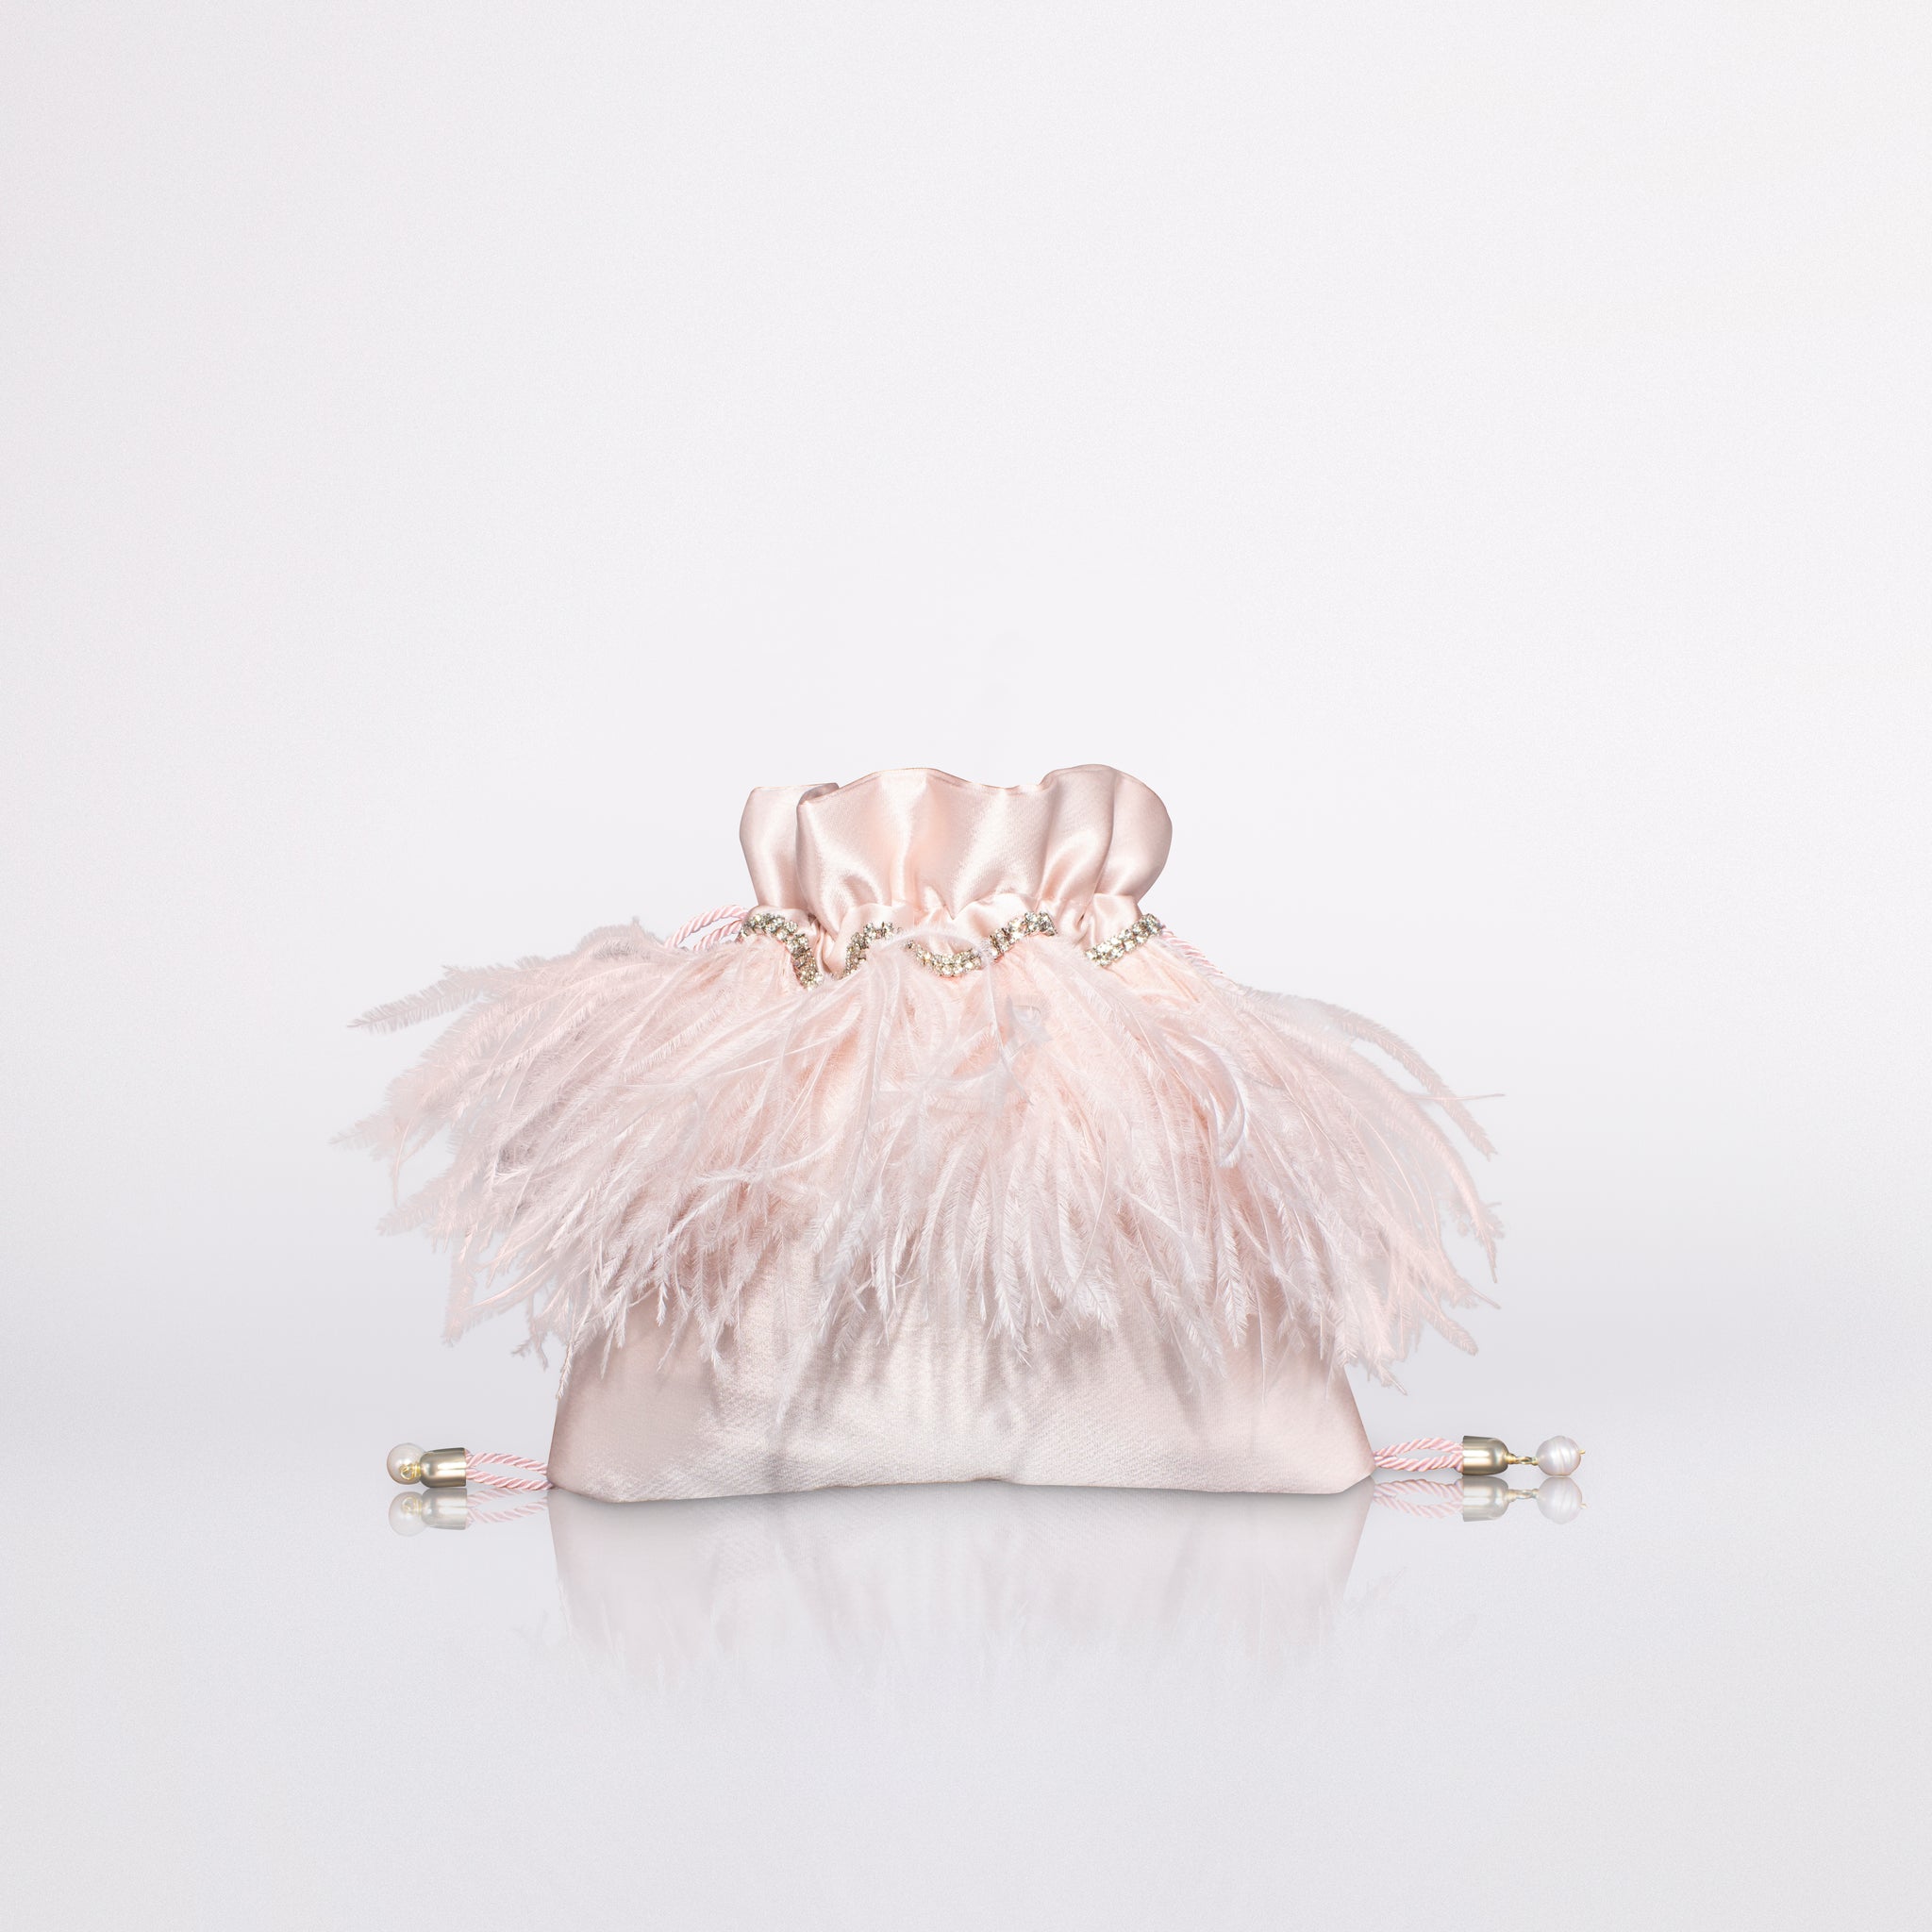 Mini Feathers Bag in colorazione rosa